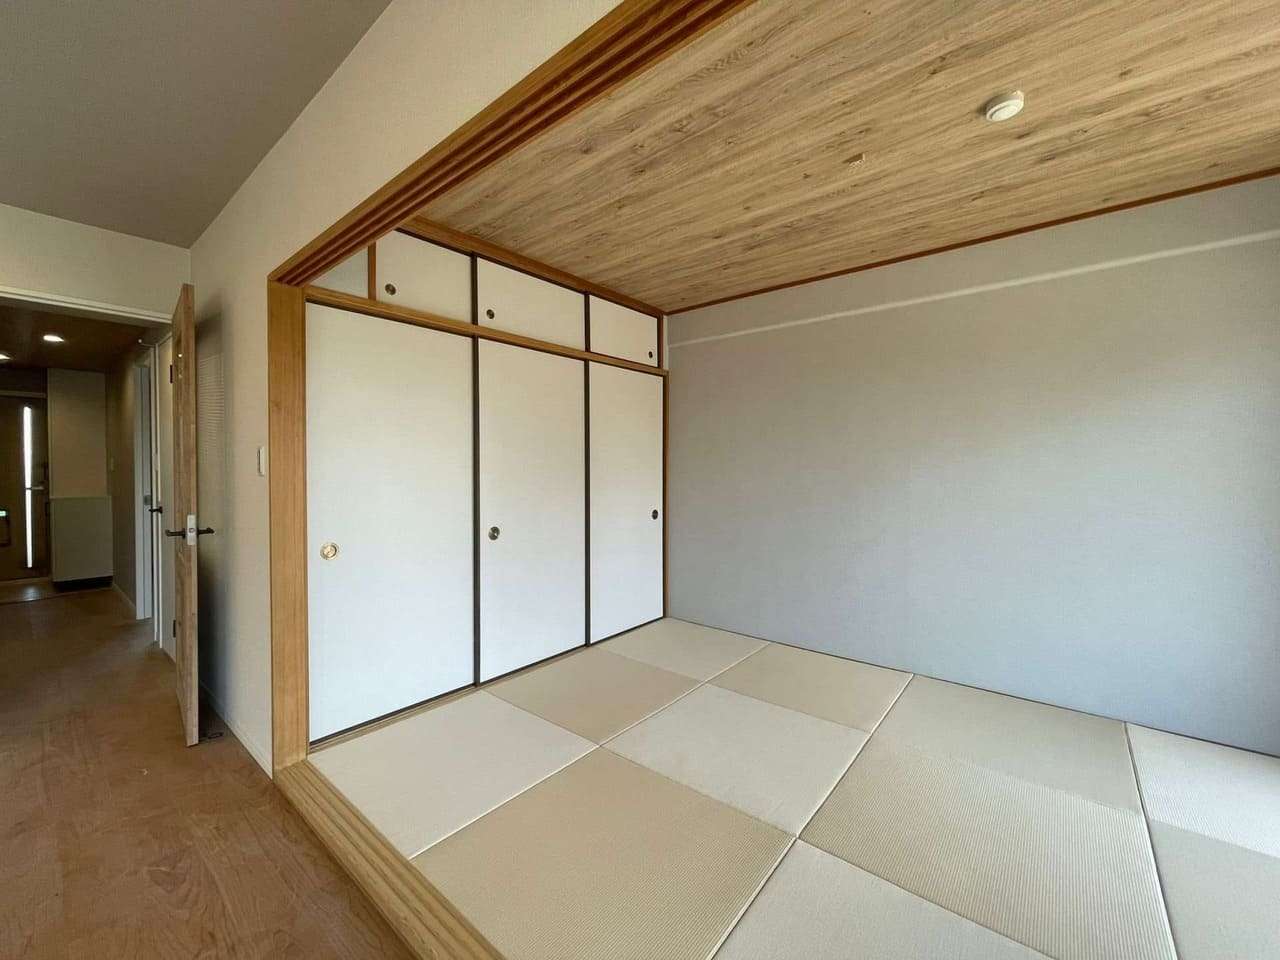 神戸市のリフォーム会社ユーユーフォームの和室リフォーム画像